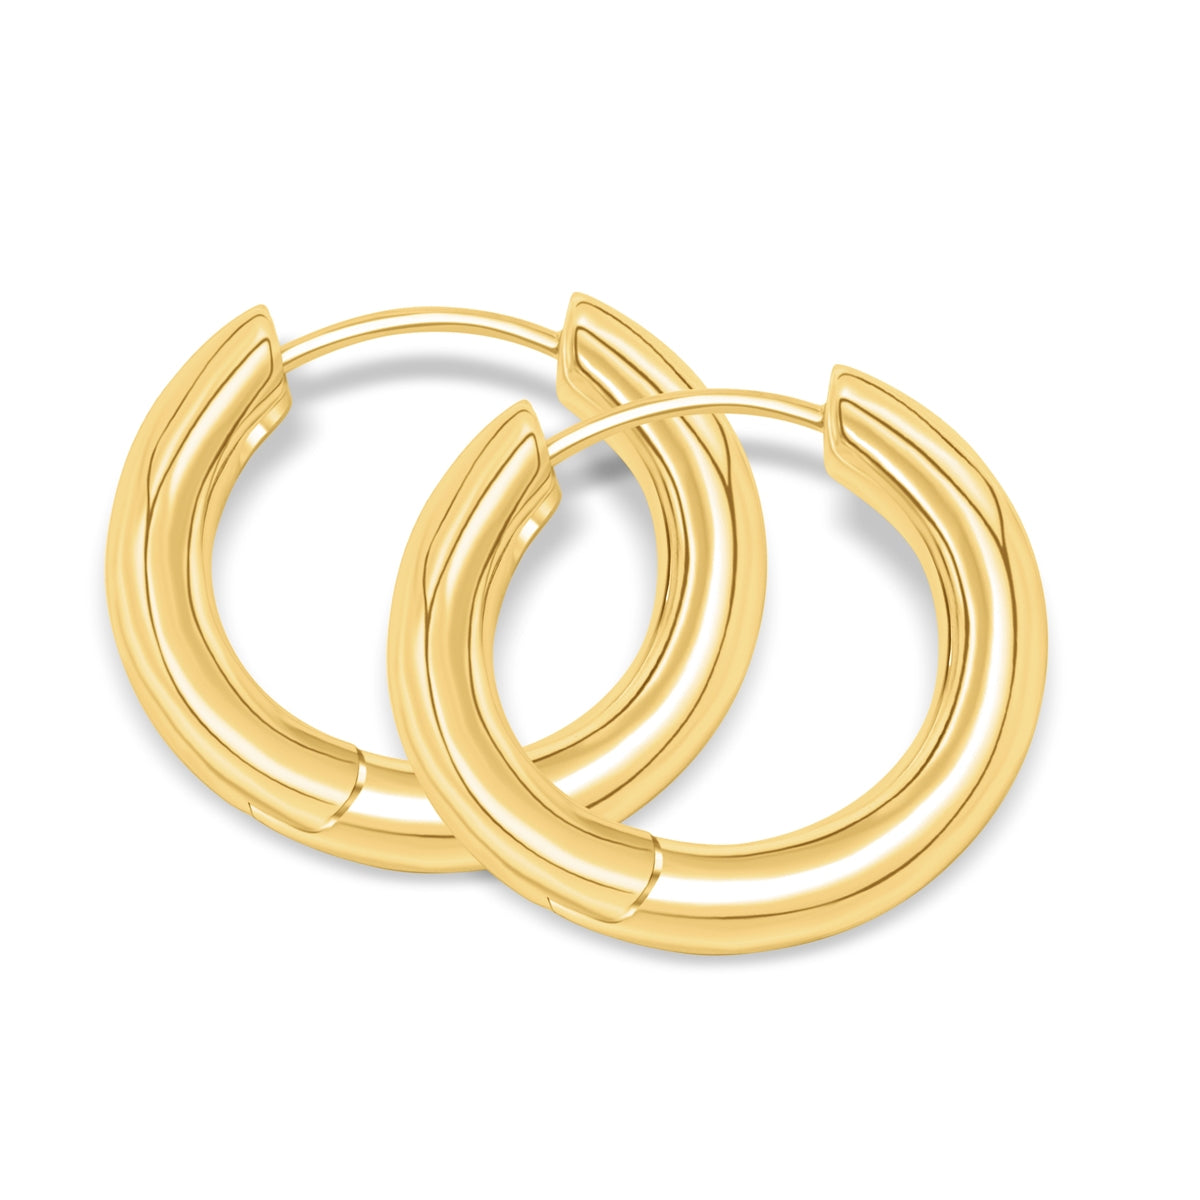 Gold plated simple hoop earrings